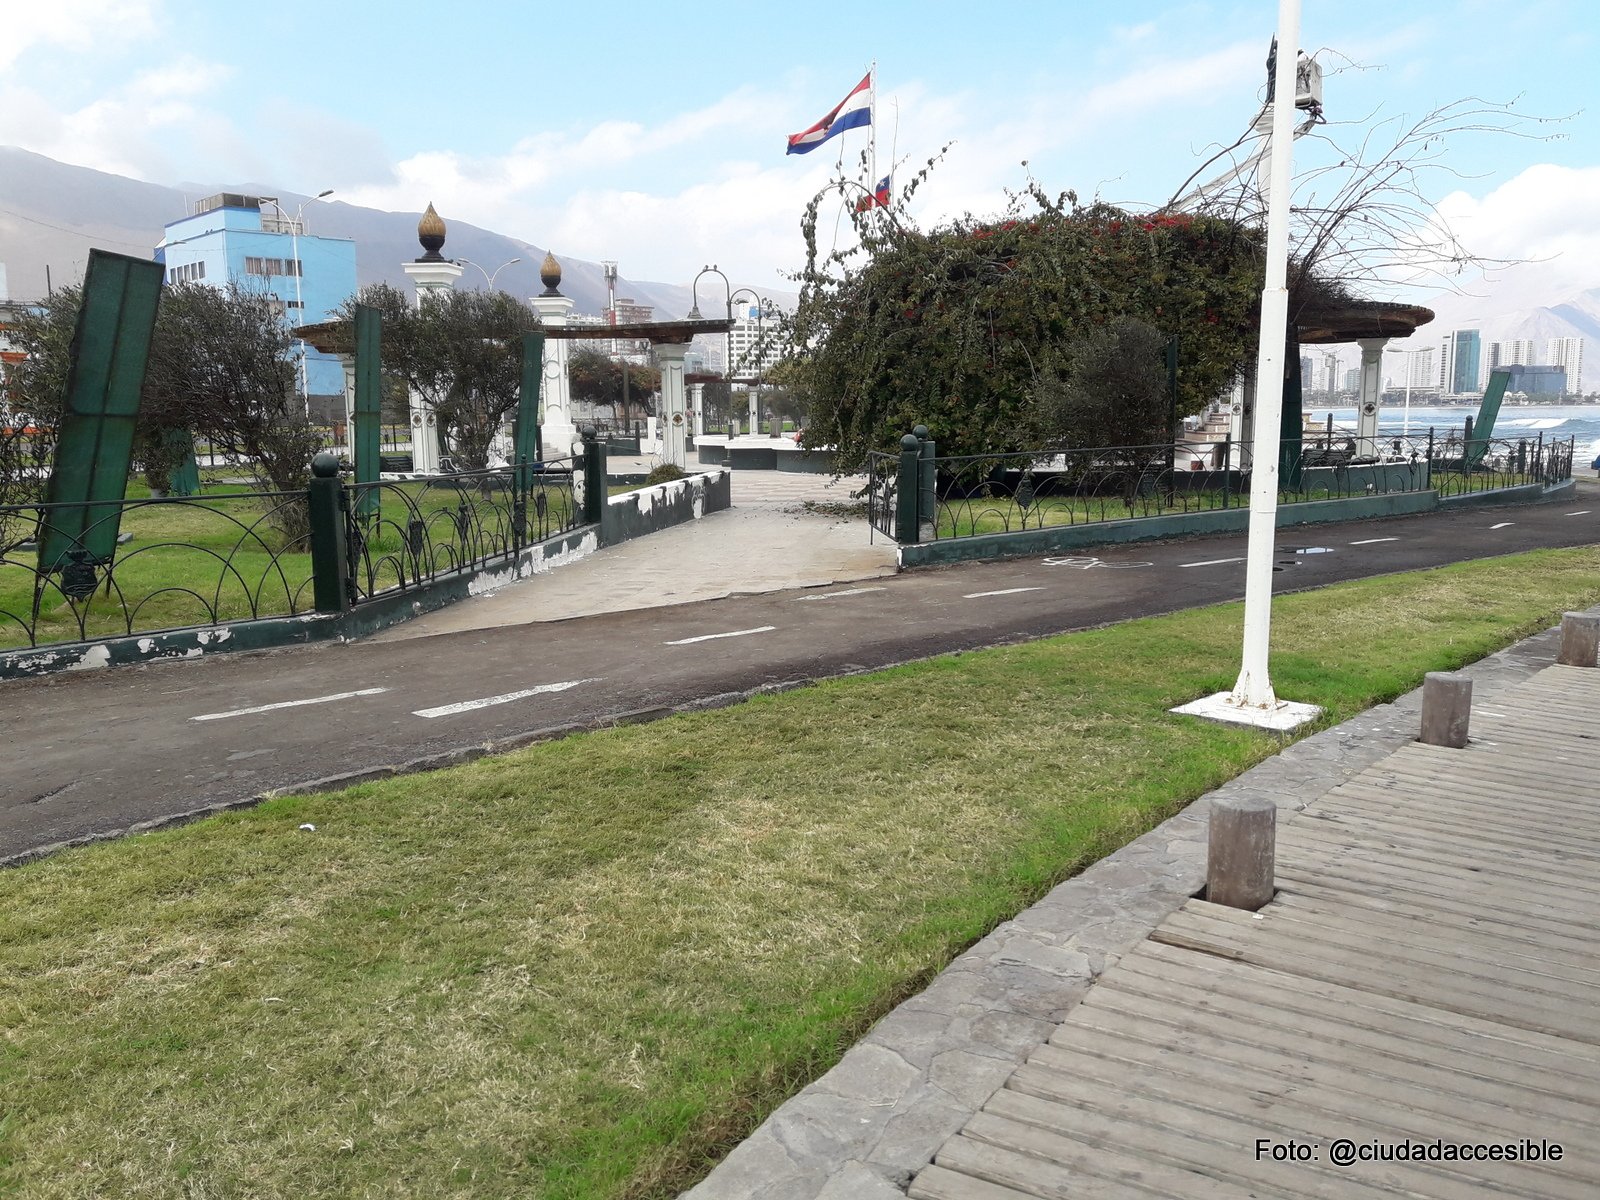 Unión del sendero peatonal desde la plaza Cristobal Colón hacia ciclovía sin demarcación cebra ni conexión a ruta peatonal